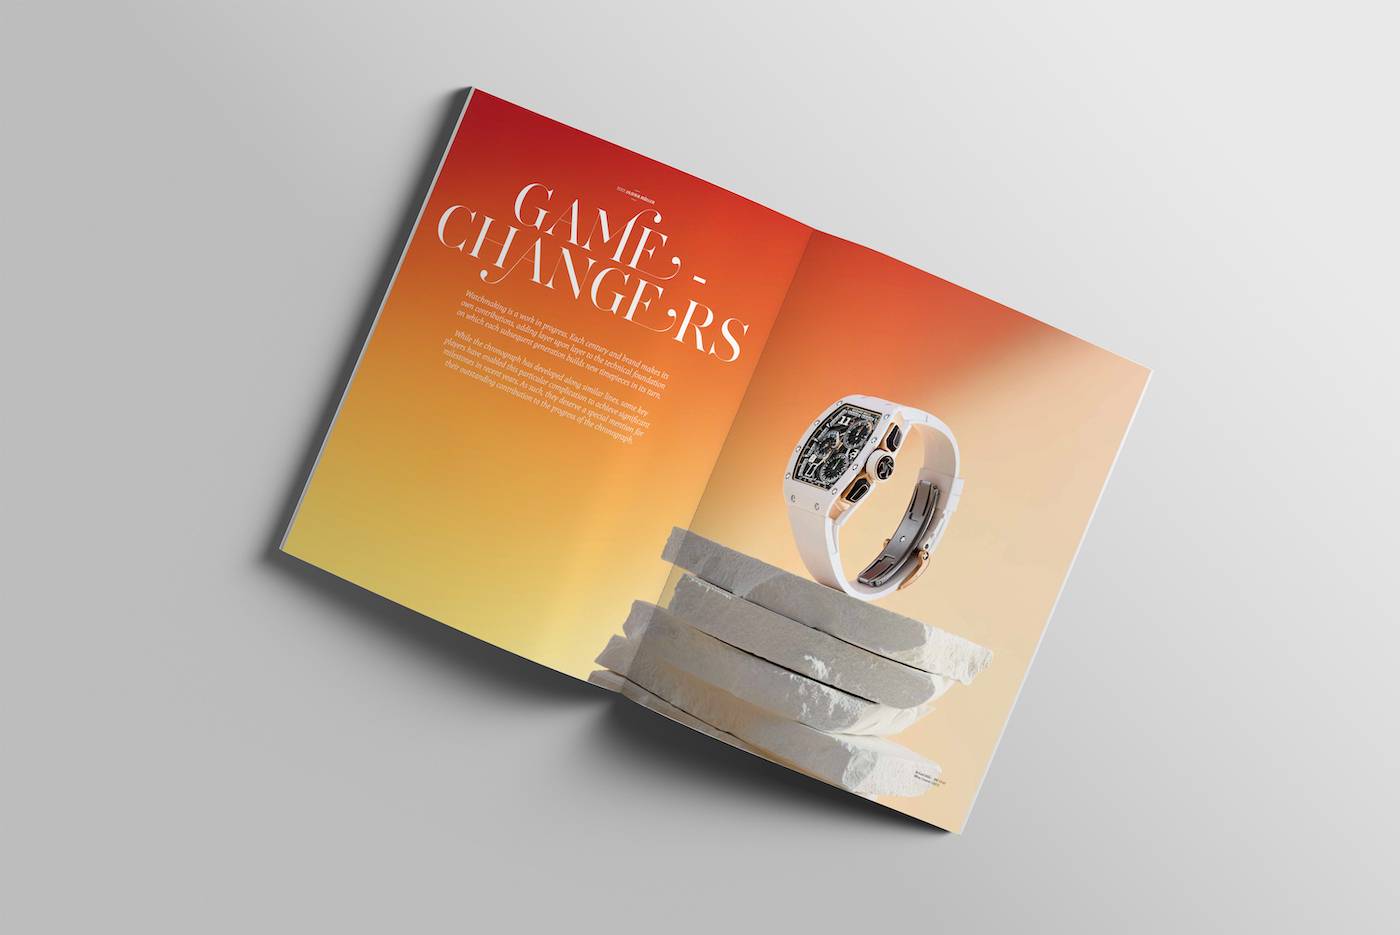 The Millennium Watch Book: Cronógrafos listos para su lanzamiento en Noviembre